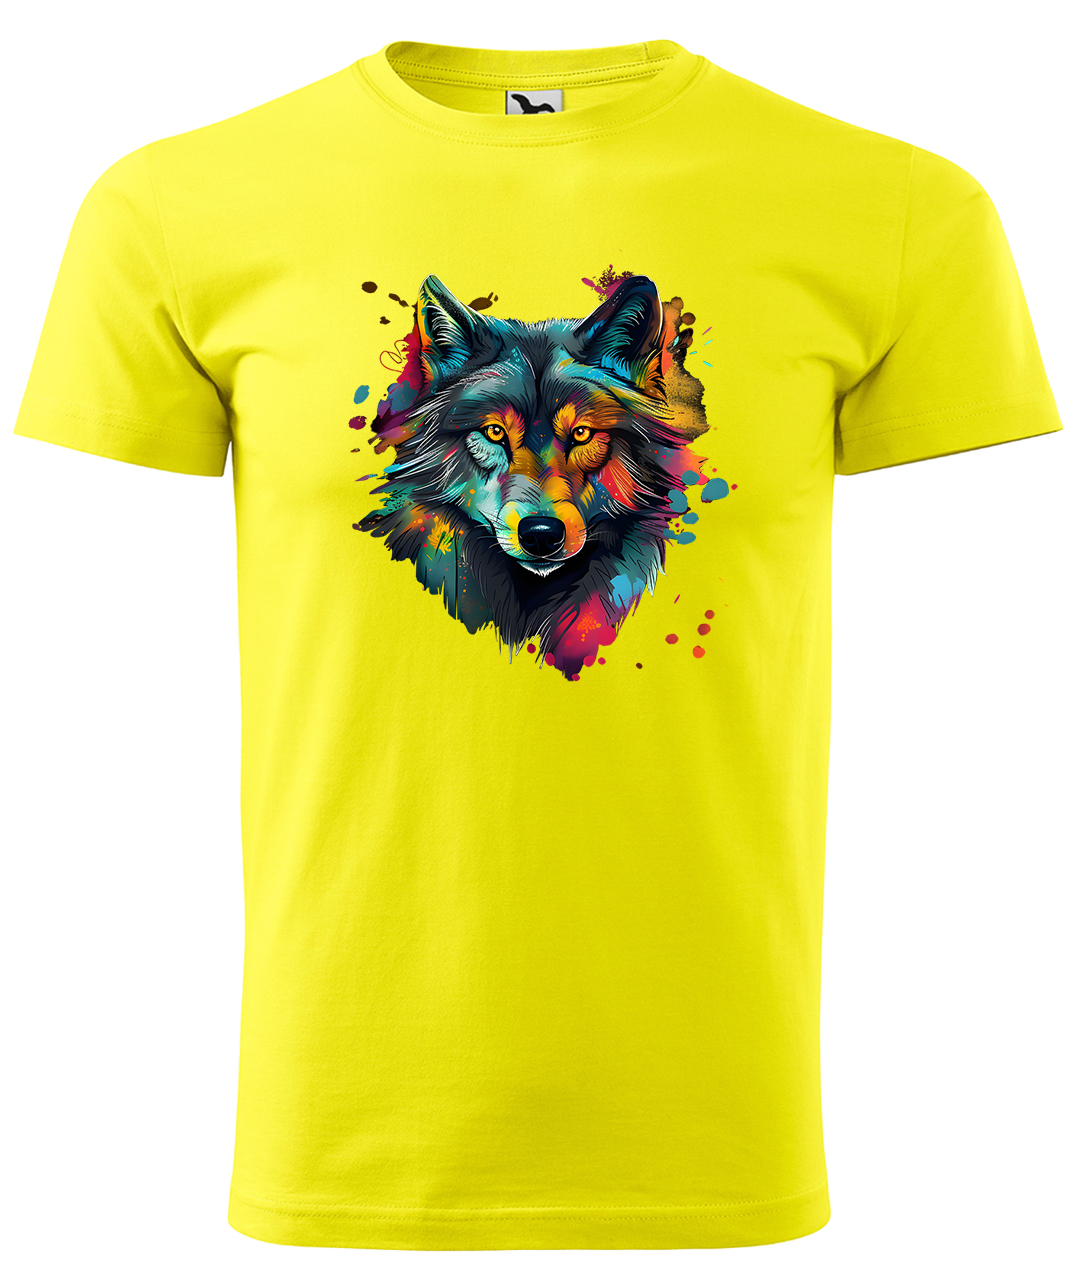 Dětské tričko s vlkem - Malovaný vlk Velikost: 6 let / 122 cm, Barva: Žlutá (04), Délka rukávu: Krátký rukáv